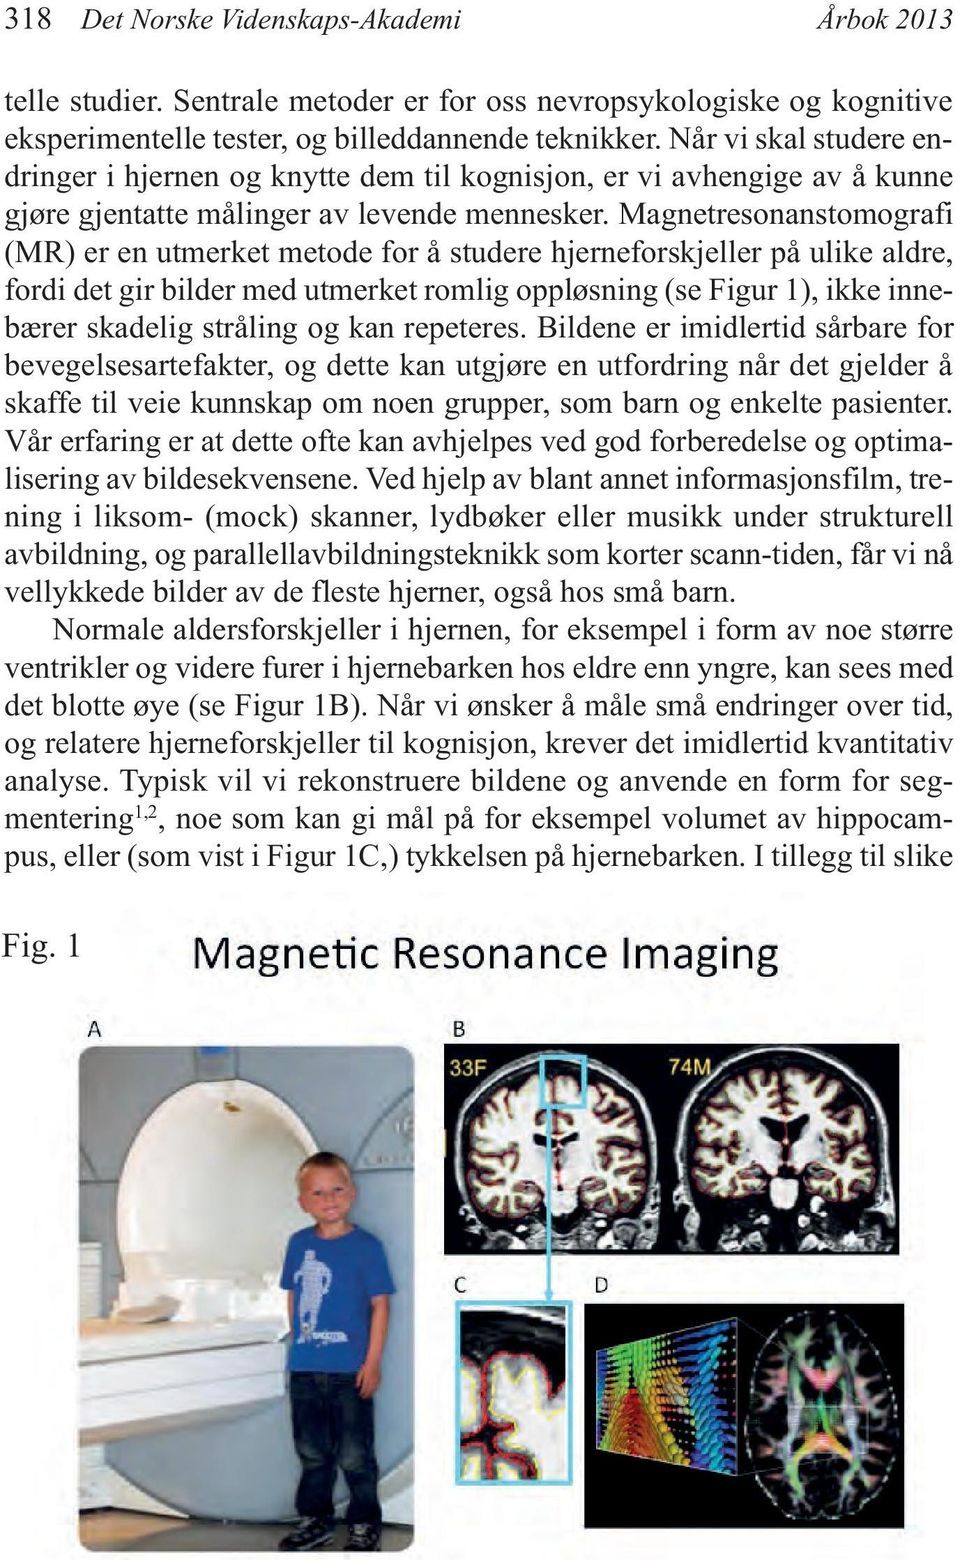 Magnetresonanstomografi (MR) er en utmerket metode for å studere hjerneforskjeller på ulike aldre, fordi det gir bilder med utmerket romlig oppløsning (se Figur 1), ikke innebærer skadelig stråling